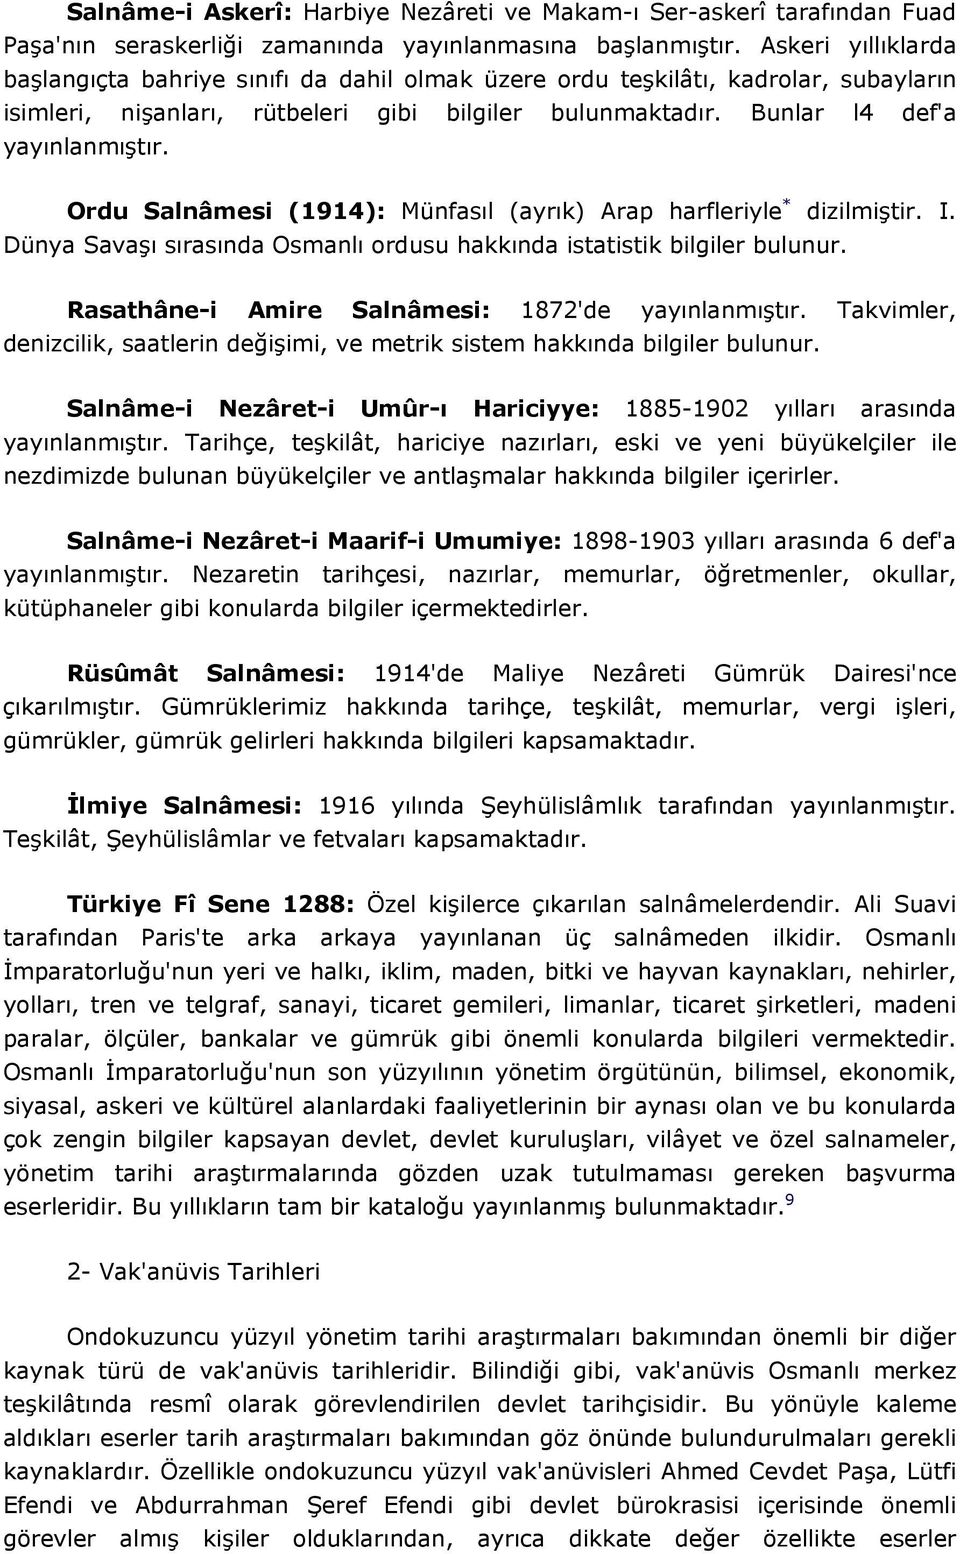 Ordu Salnâmesi (1914): Münfasıl (ayrık) Arap harfleriyle * dizilmiştir. I. Dünya Savaşı sırasında Osmanlı ordusu hakkında istatistik bilgiler bulunur.